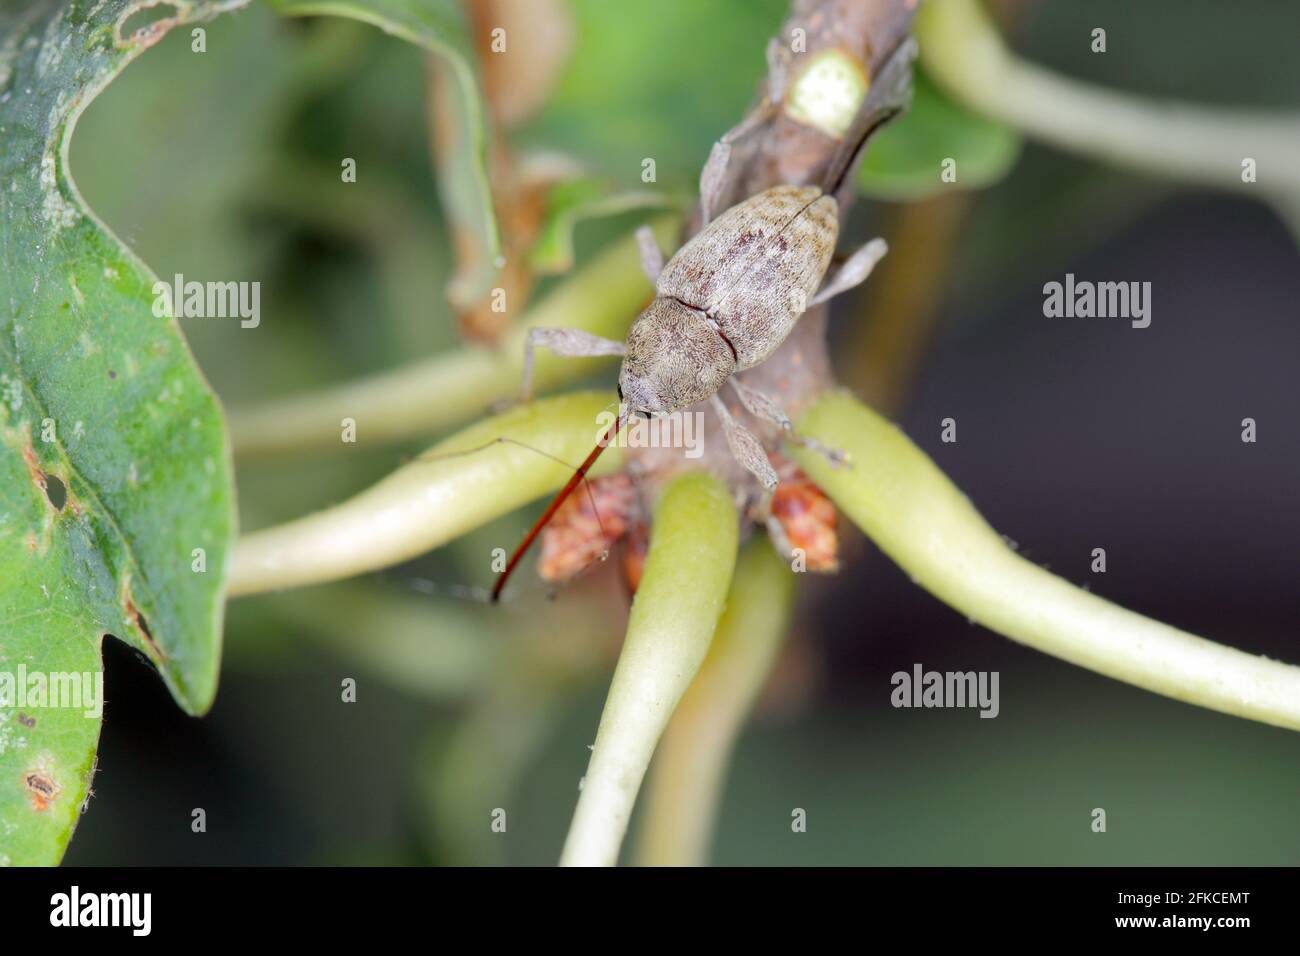 Käfer von Acorn weevil Curculio glandium auf Eiche ein Blatt. Die Larven entwickeln sich in der Eichel Stockfoto